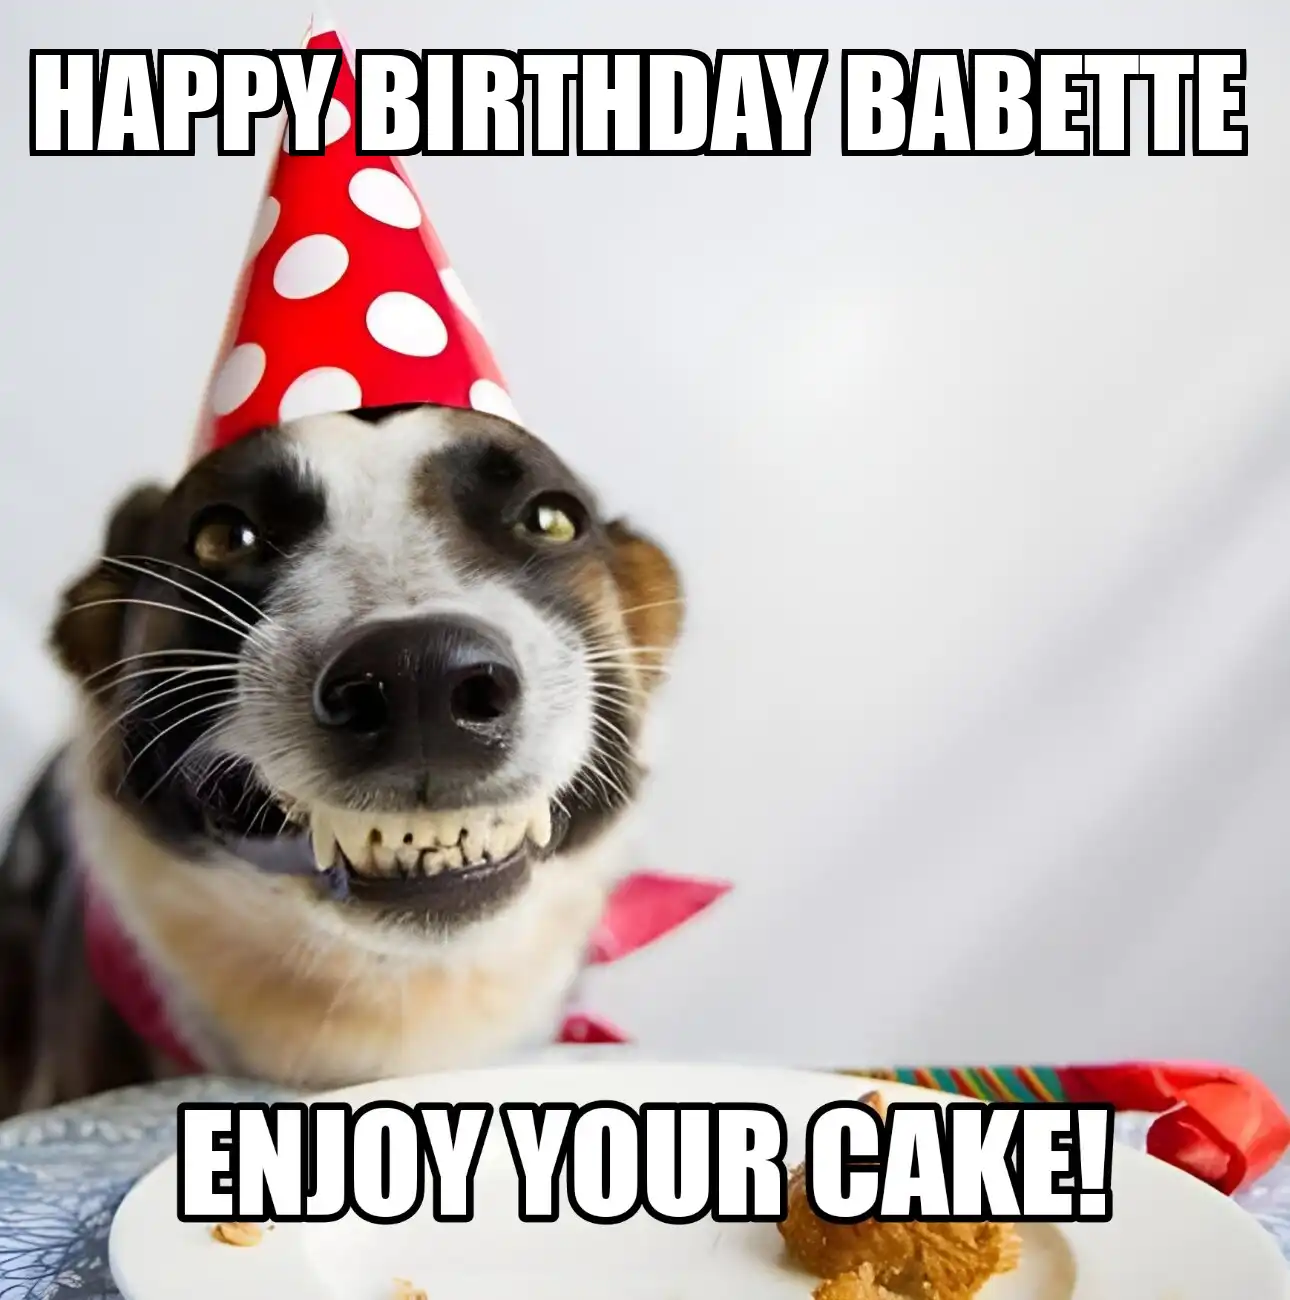 Happy Birthday Babette Enjoy Your Cake Dog Meme